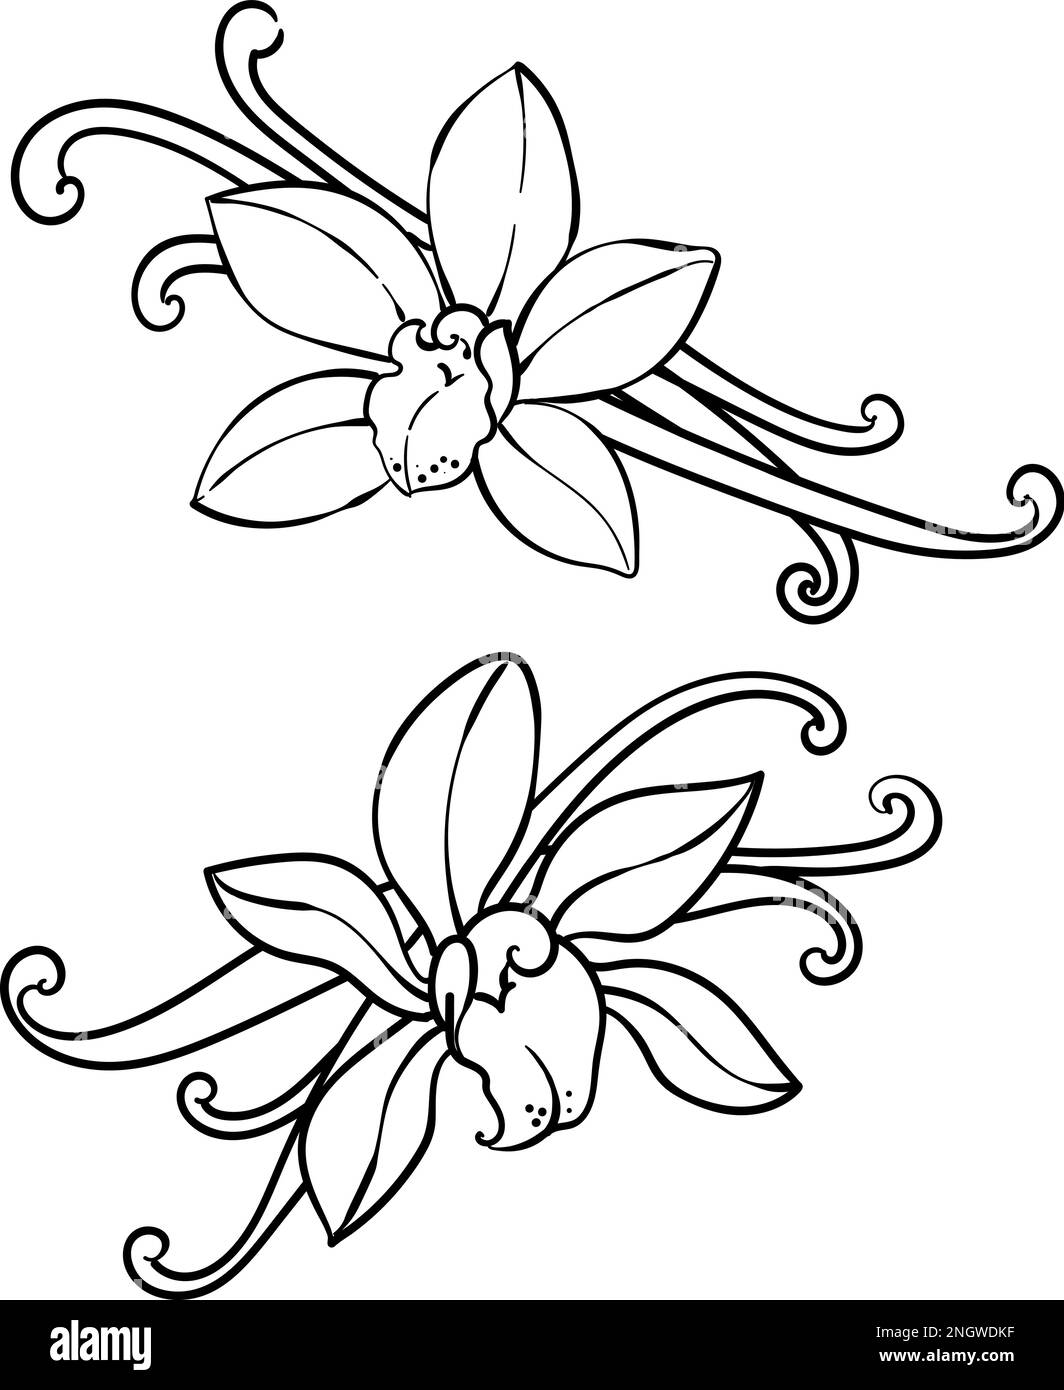 Fiori di orchidea alla vaniglia e baccelli Illustrazione Vettoriale